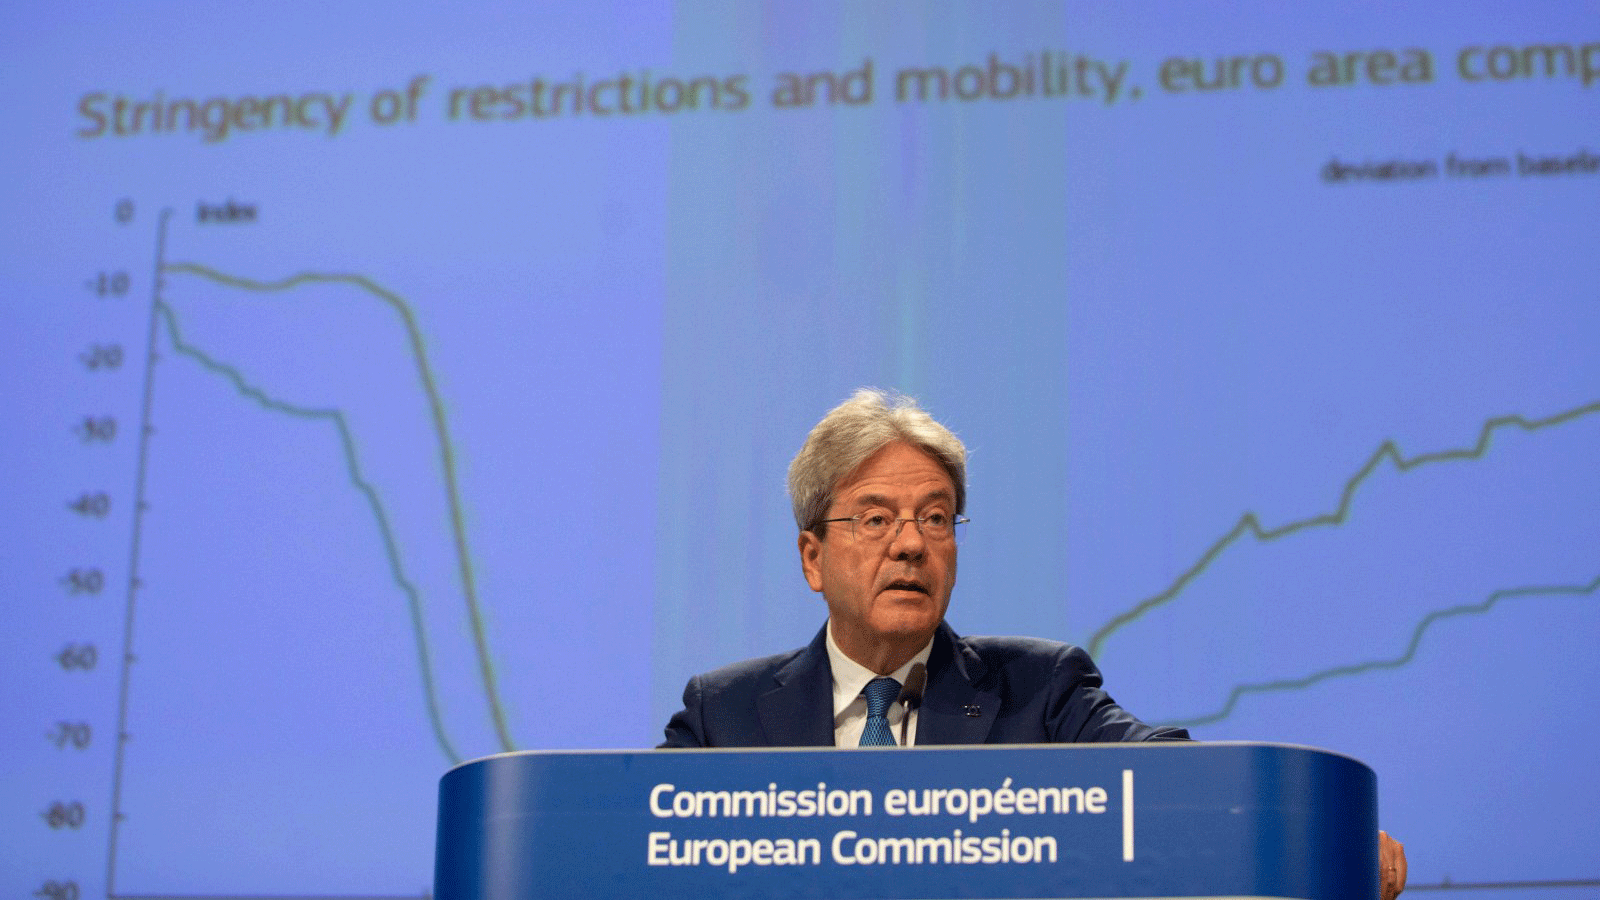 المفوض الأوروبي للاقتصاد باولو جينتيلوني يتحدث خلال مؤتمر صحفي حول التوقعات الاقتصادية لصيف 2020 في مقر الاتحاد الأوروبي في بروكسل، 7 تموز/ يوليو 2020